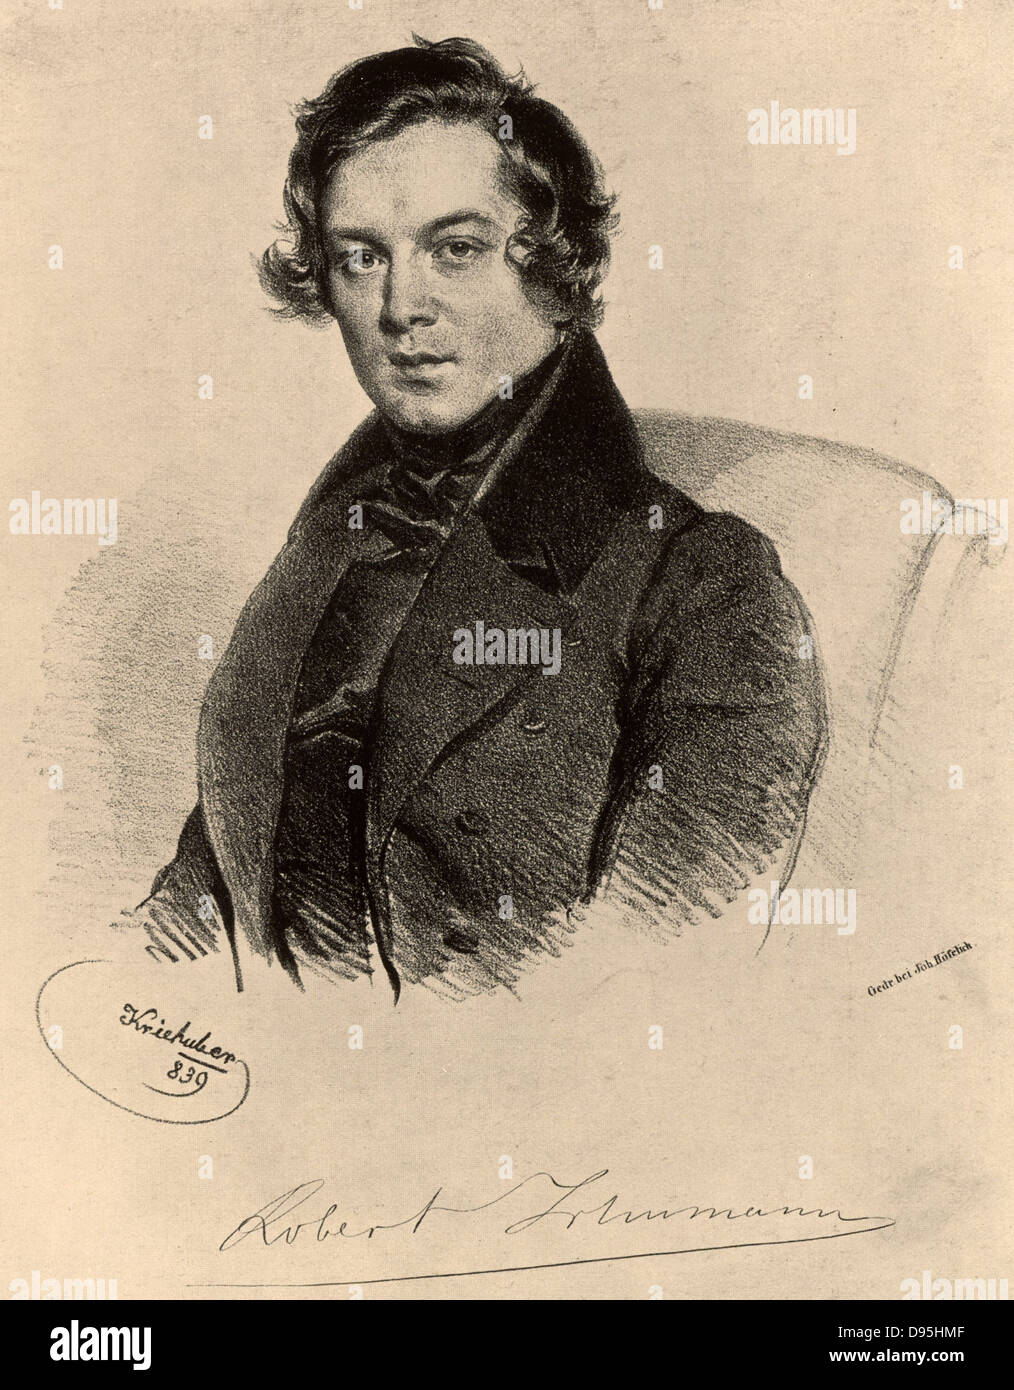 Robert Schumann (1810-1856) compositeur romantique allemand. Lithographie. Banque D'Images